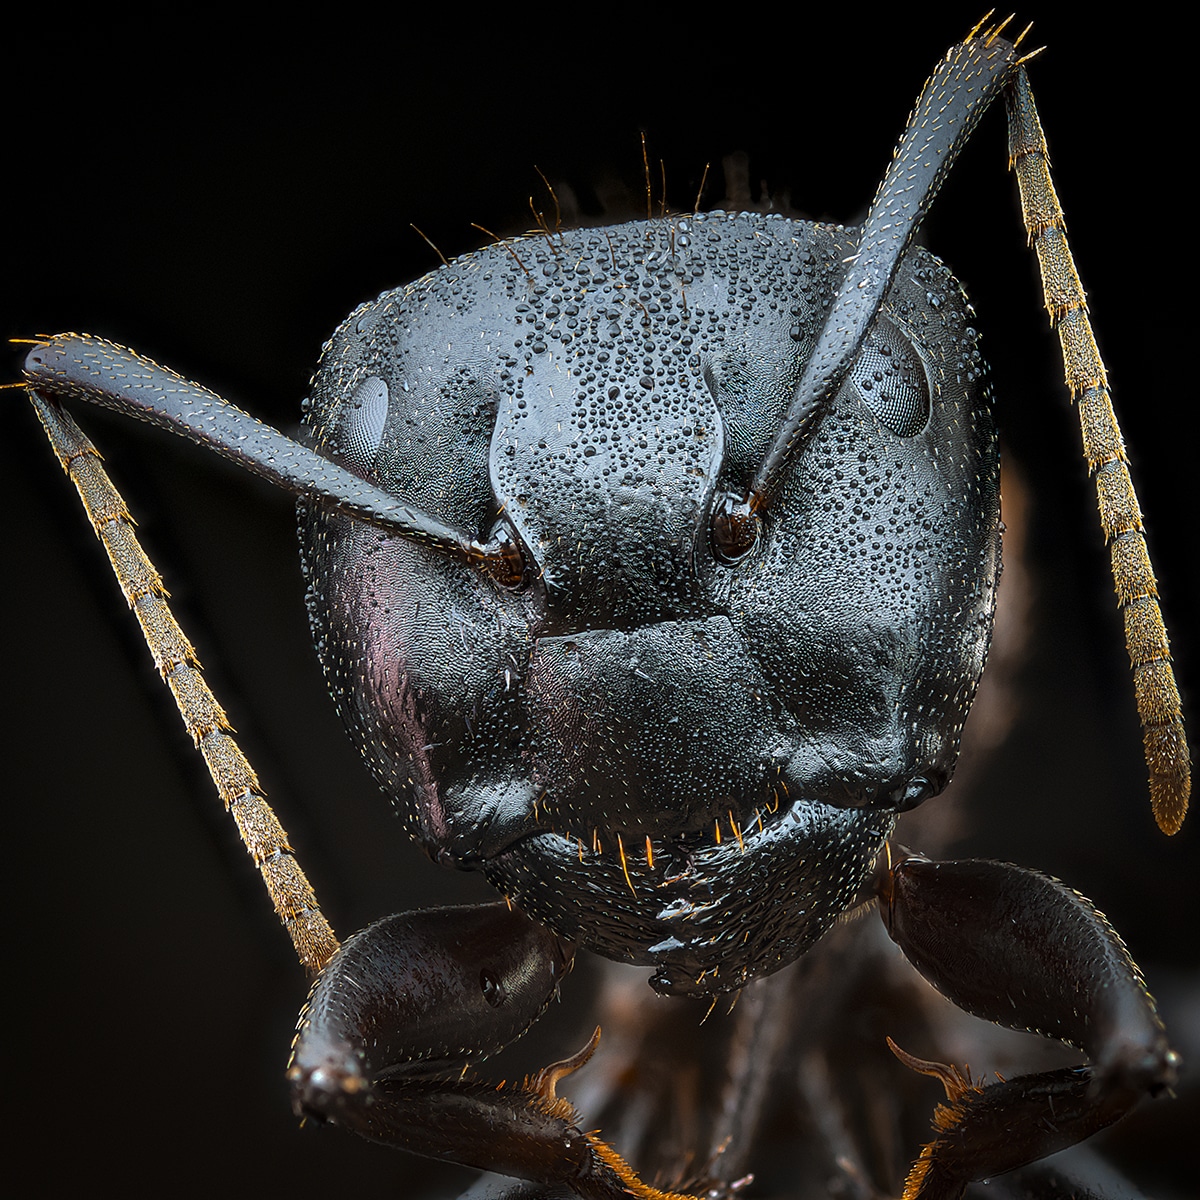 Il volto delle formiche in macrofotografie